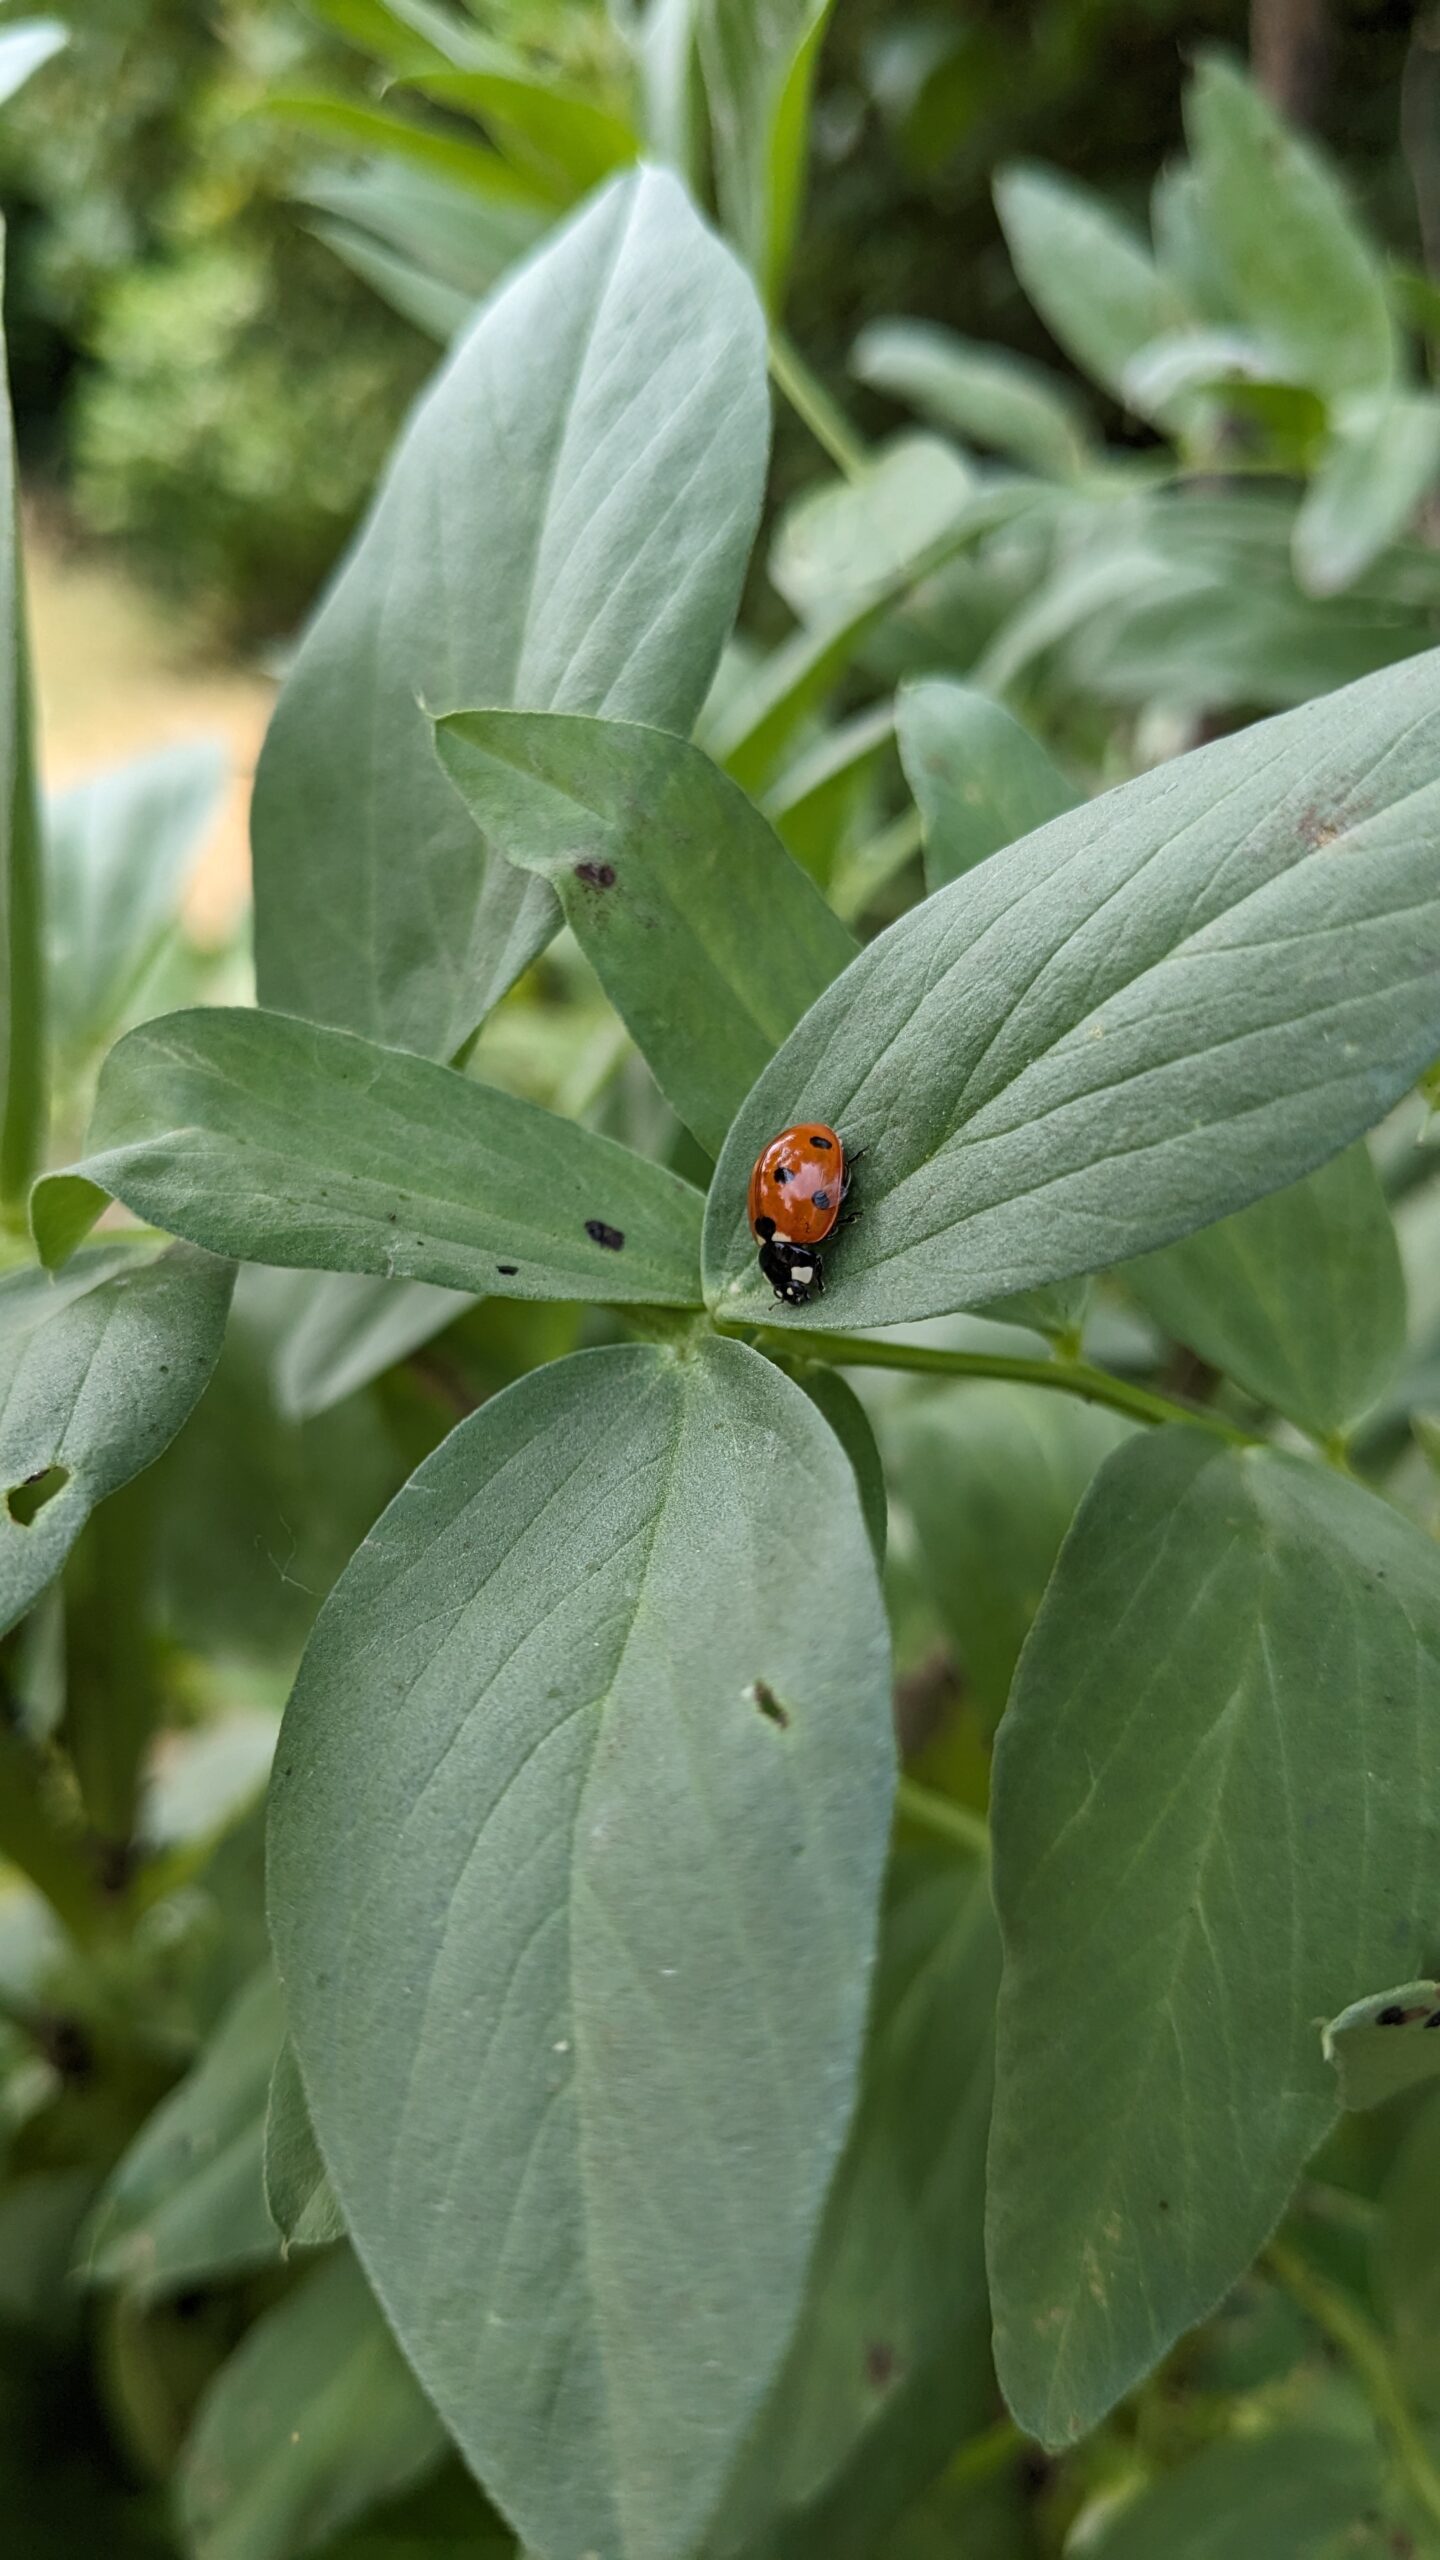 Zwei Marienkäfer auf den Blättern im Hochbeet.